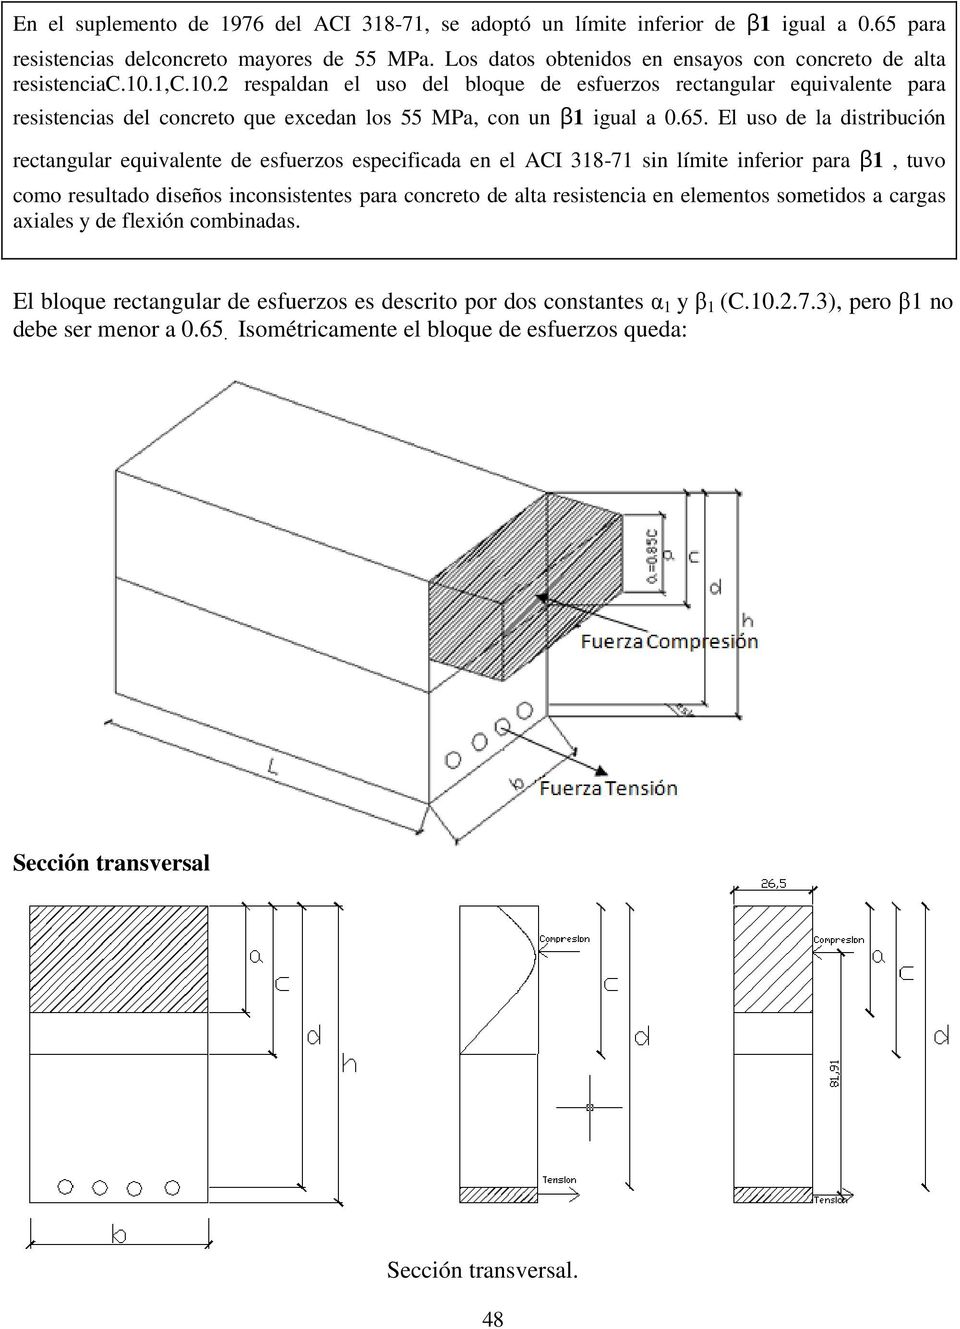 1,c.10. respaldan el uso del bloque de esfuerzos rectangular equivalente para resistencias del concreto que excedan los 55